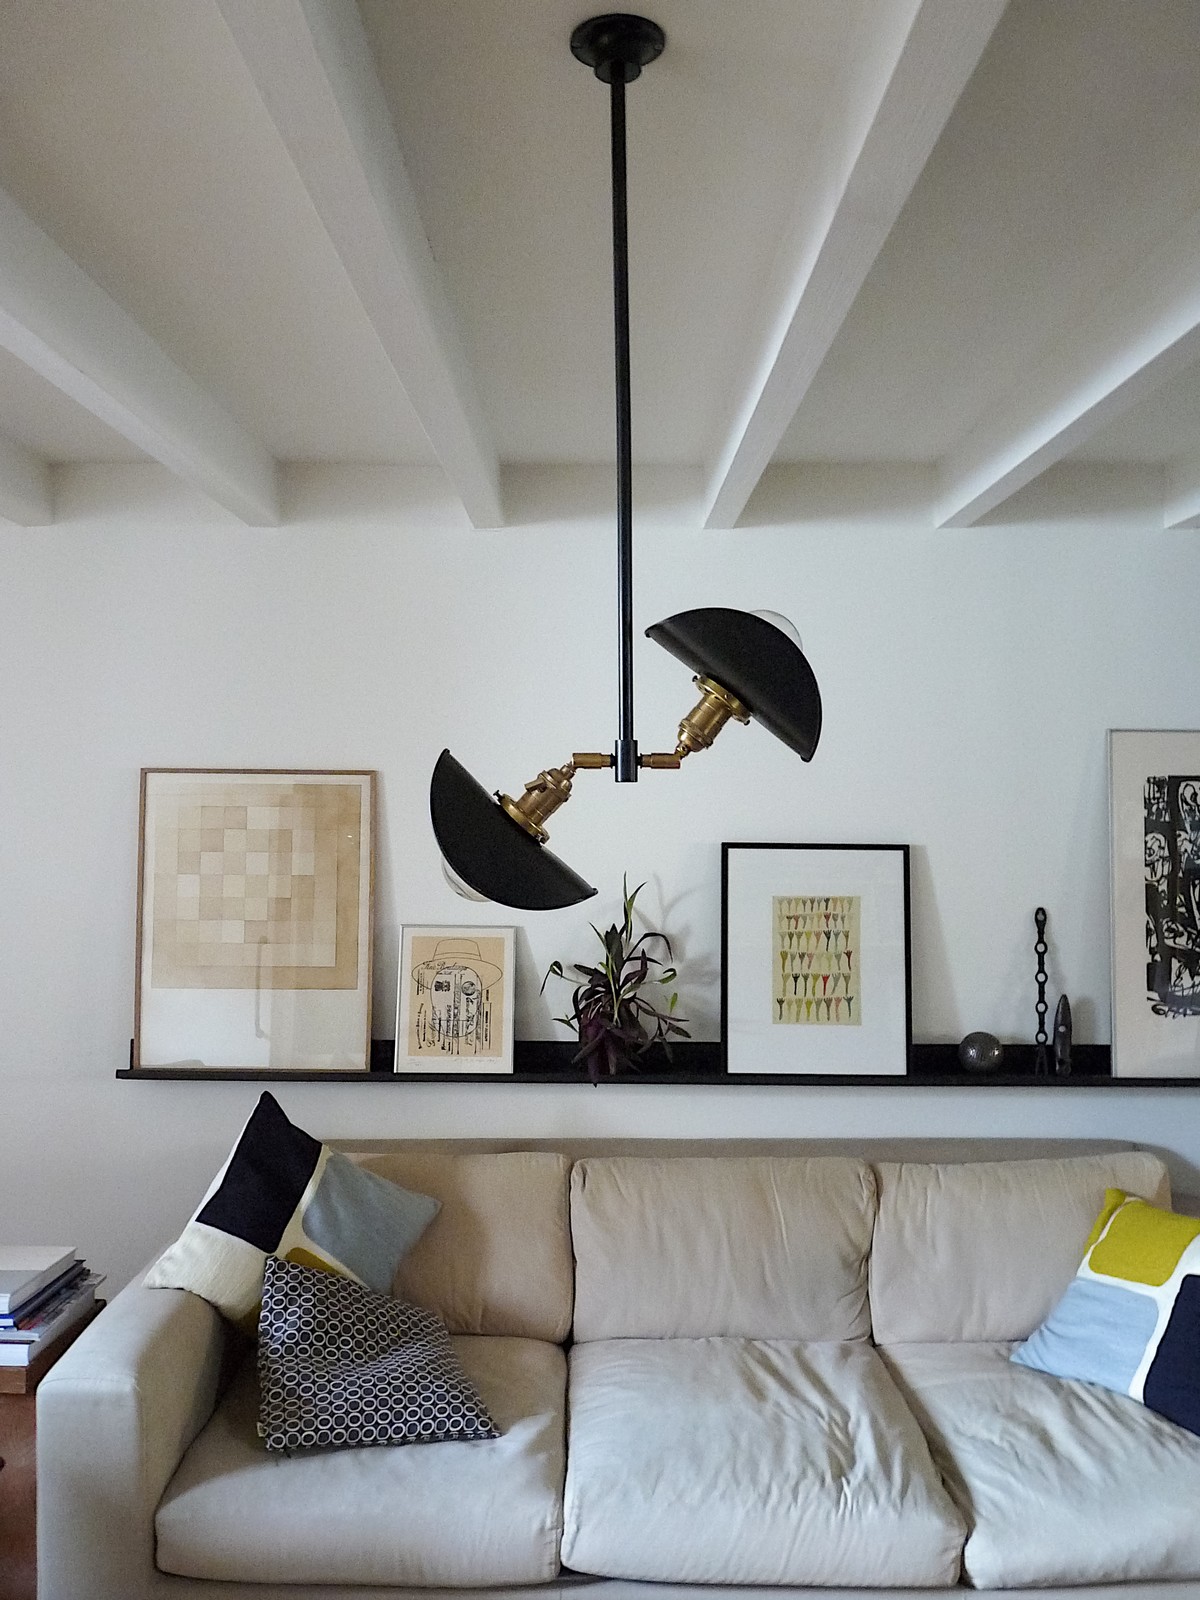 Two-light chandelier vintage industrial design adjustable shade